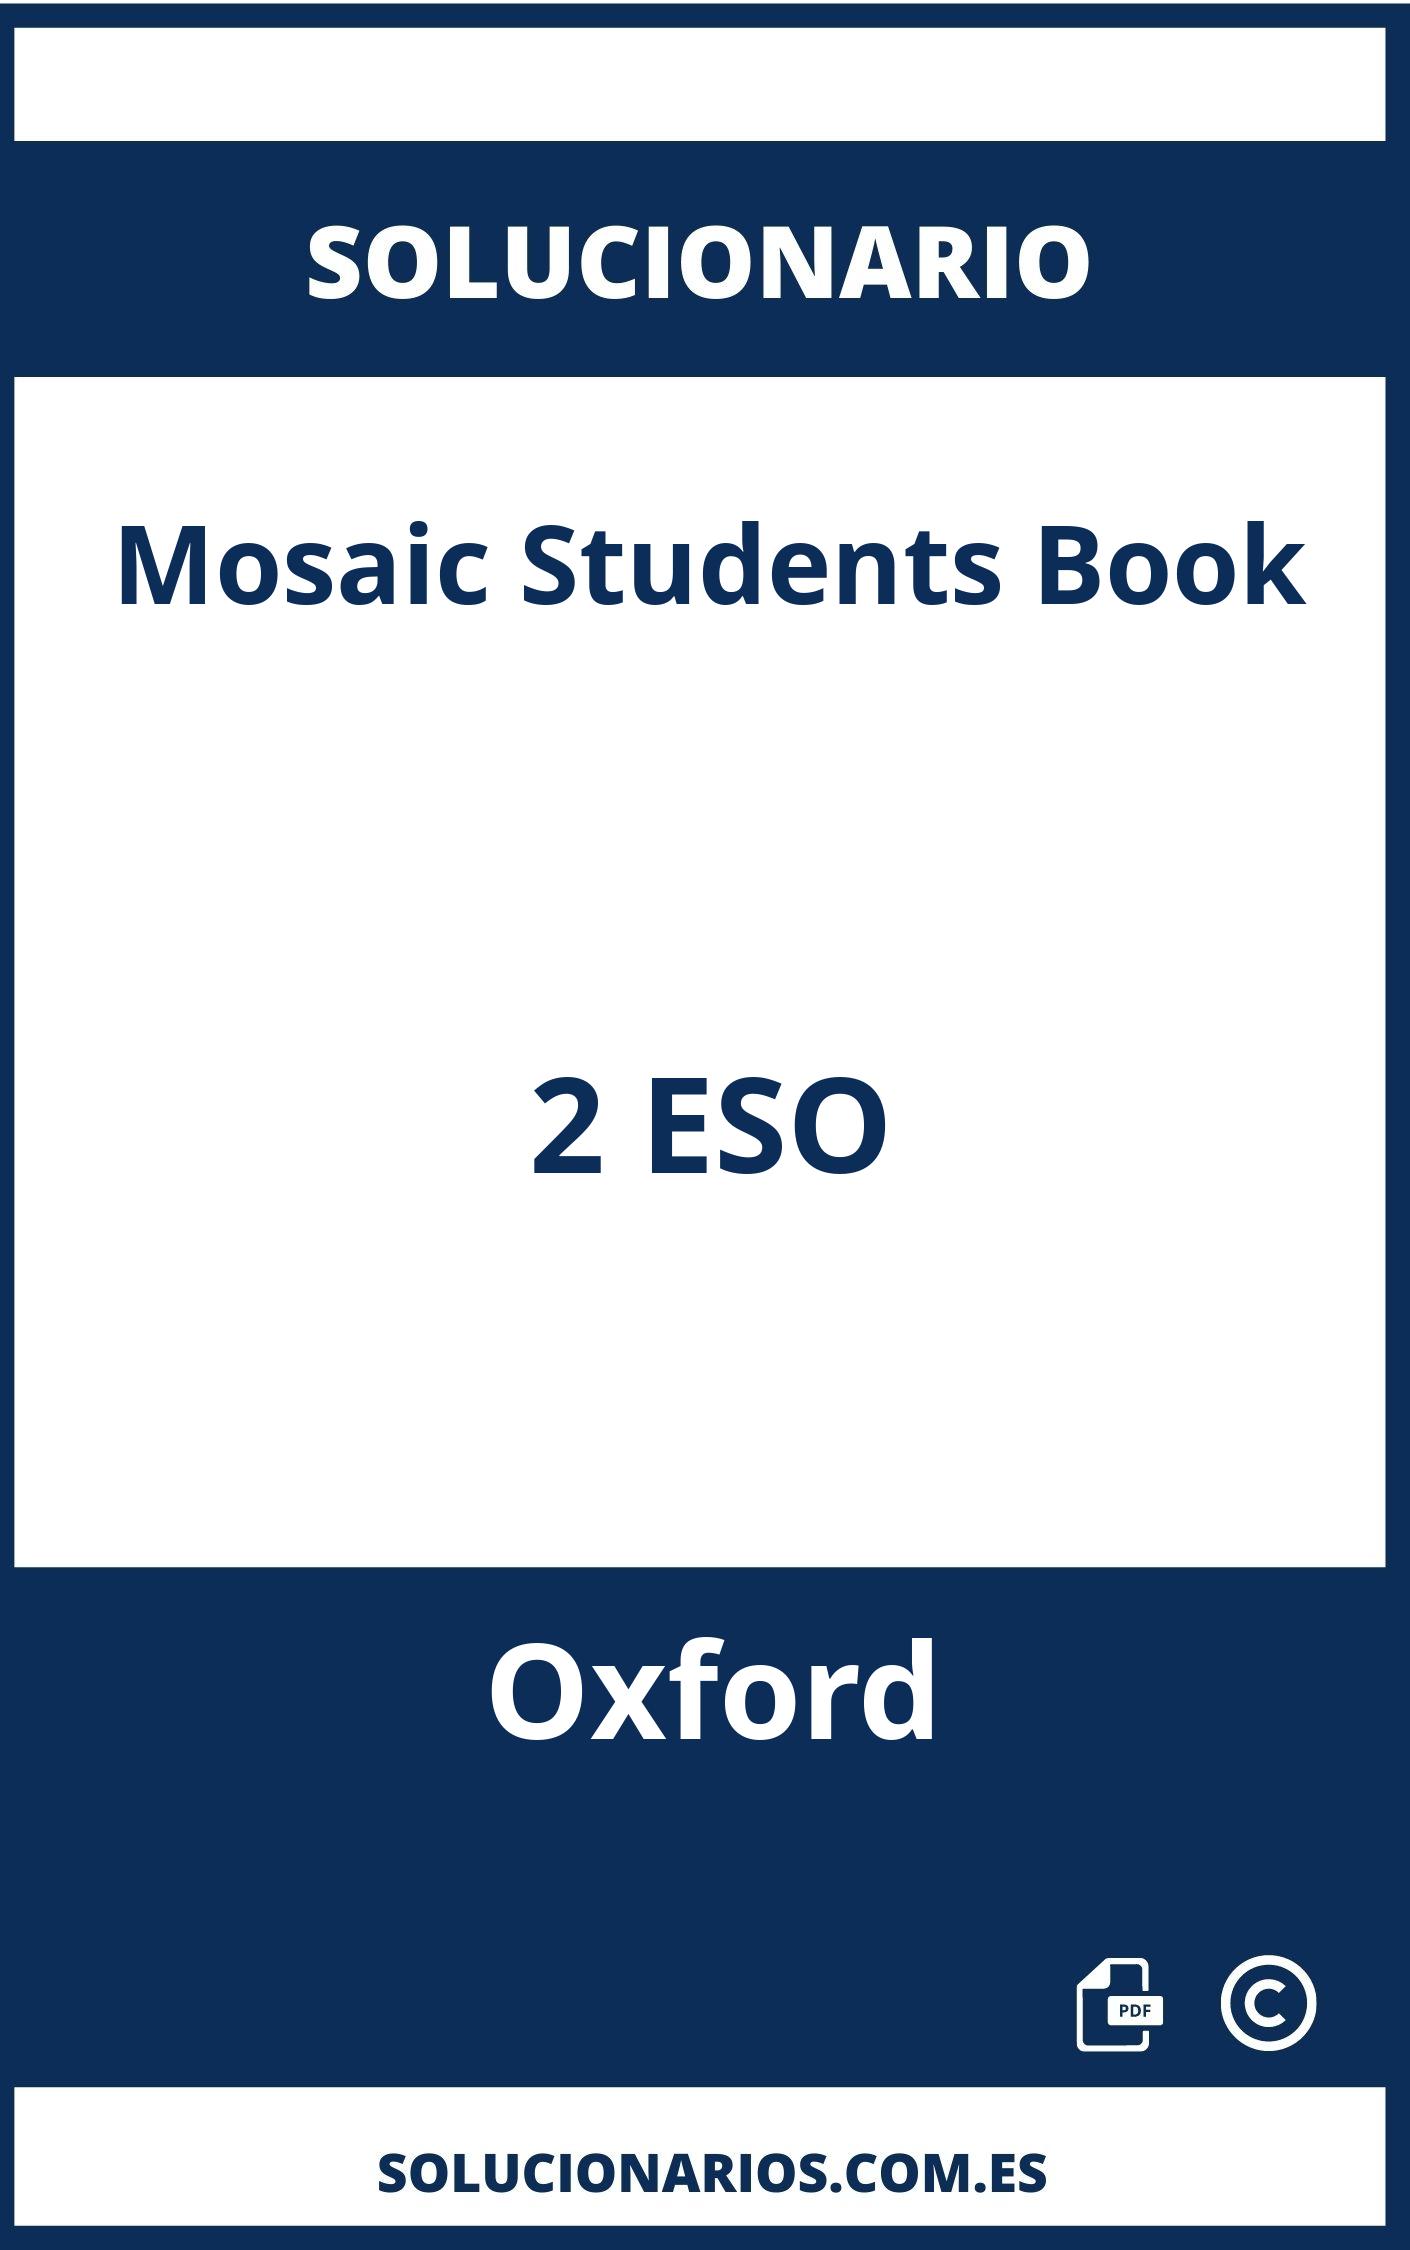 Solucionario Mosaic Students Book 2 ESO Oxford